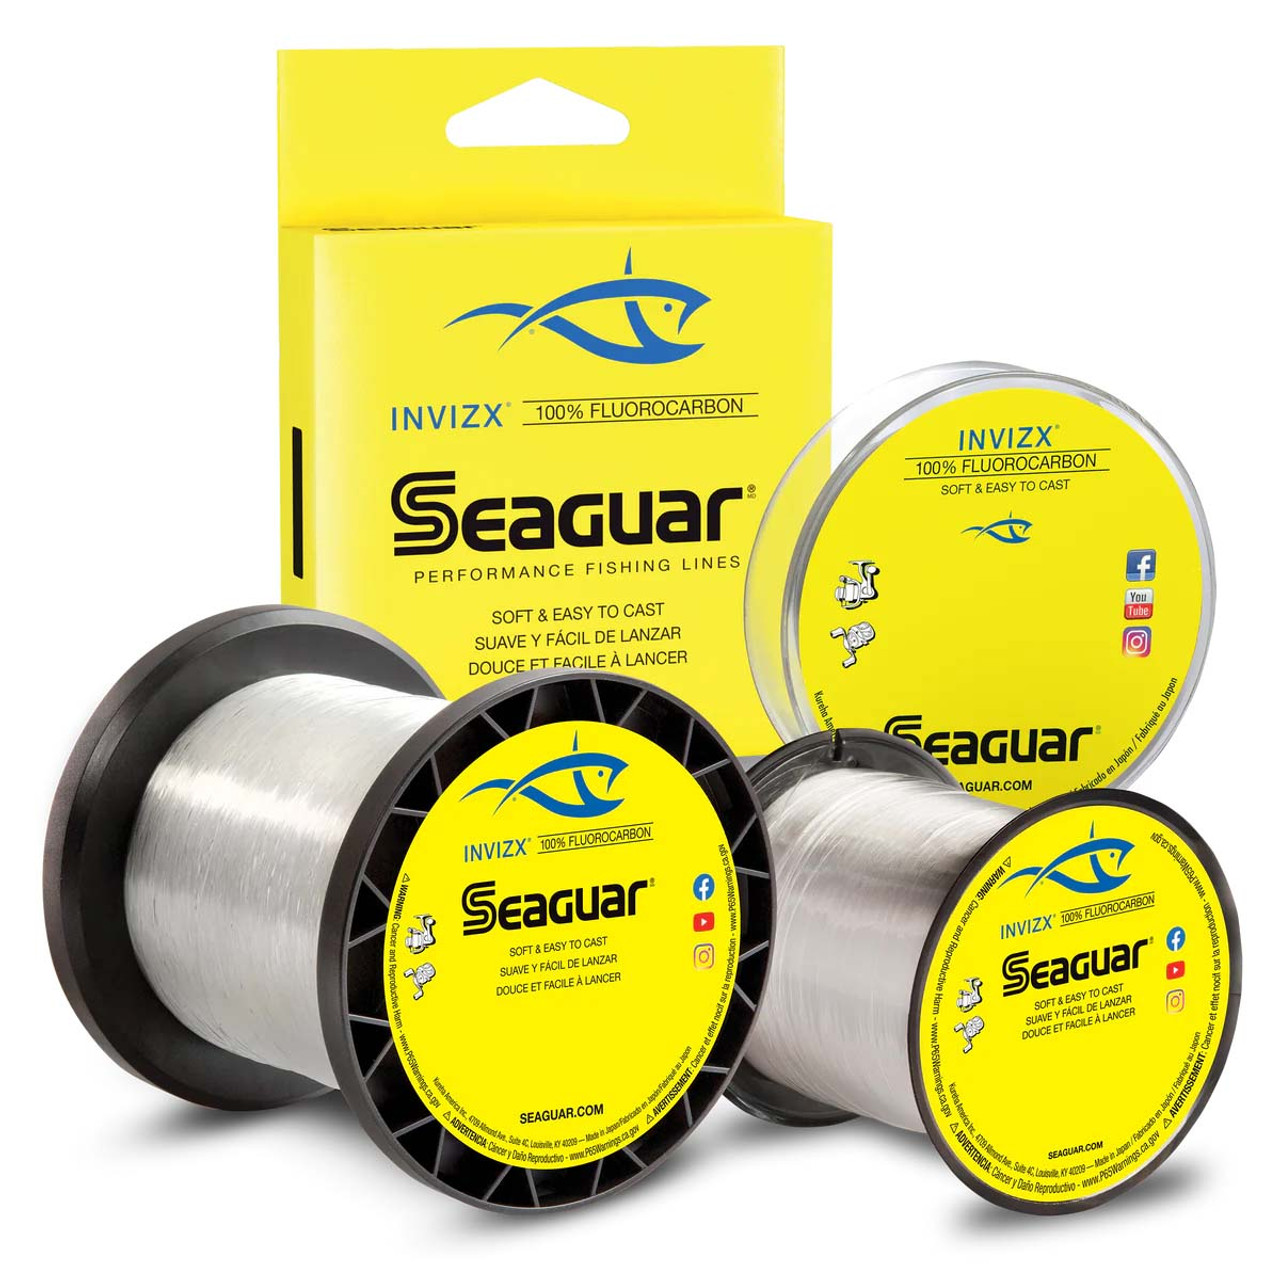 Seaguar Invizx 200yds 4lb Fluorocarbon Fishing Line